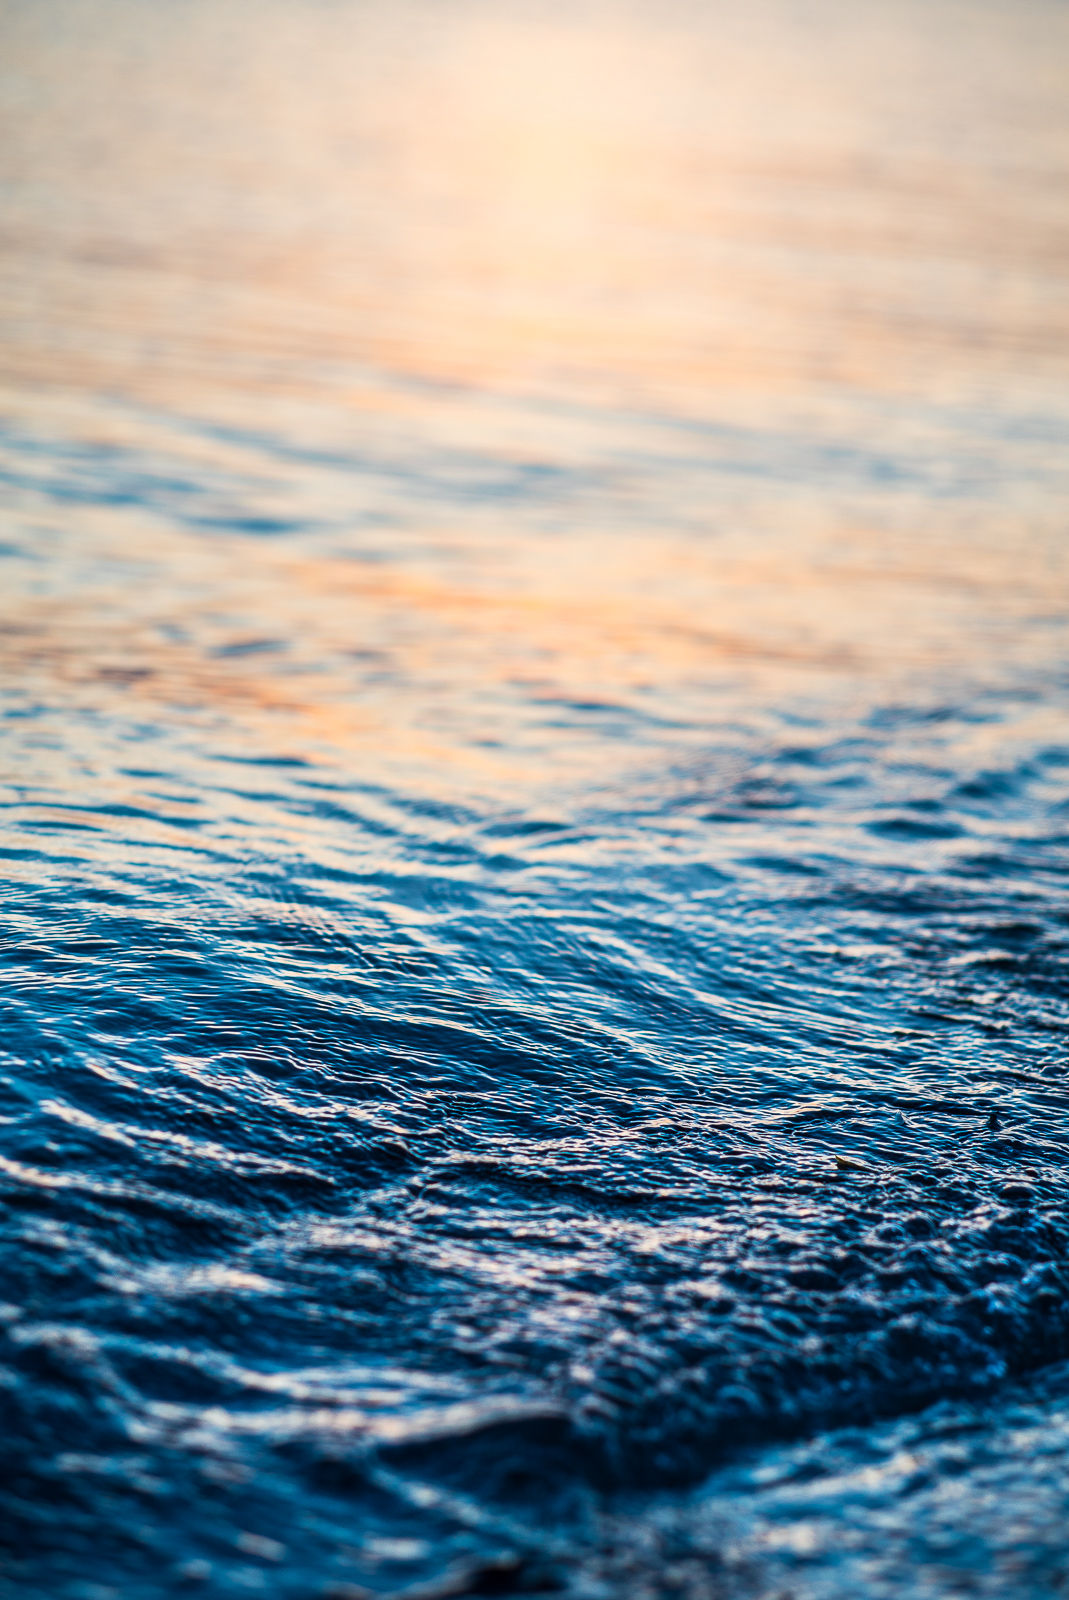 WasserOberfläche, hochformatig, reflektiert das Licht der untergehenden Sonne (1 von 3, flaches Wasser)